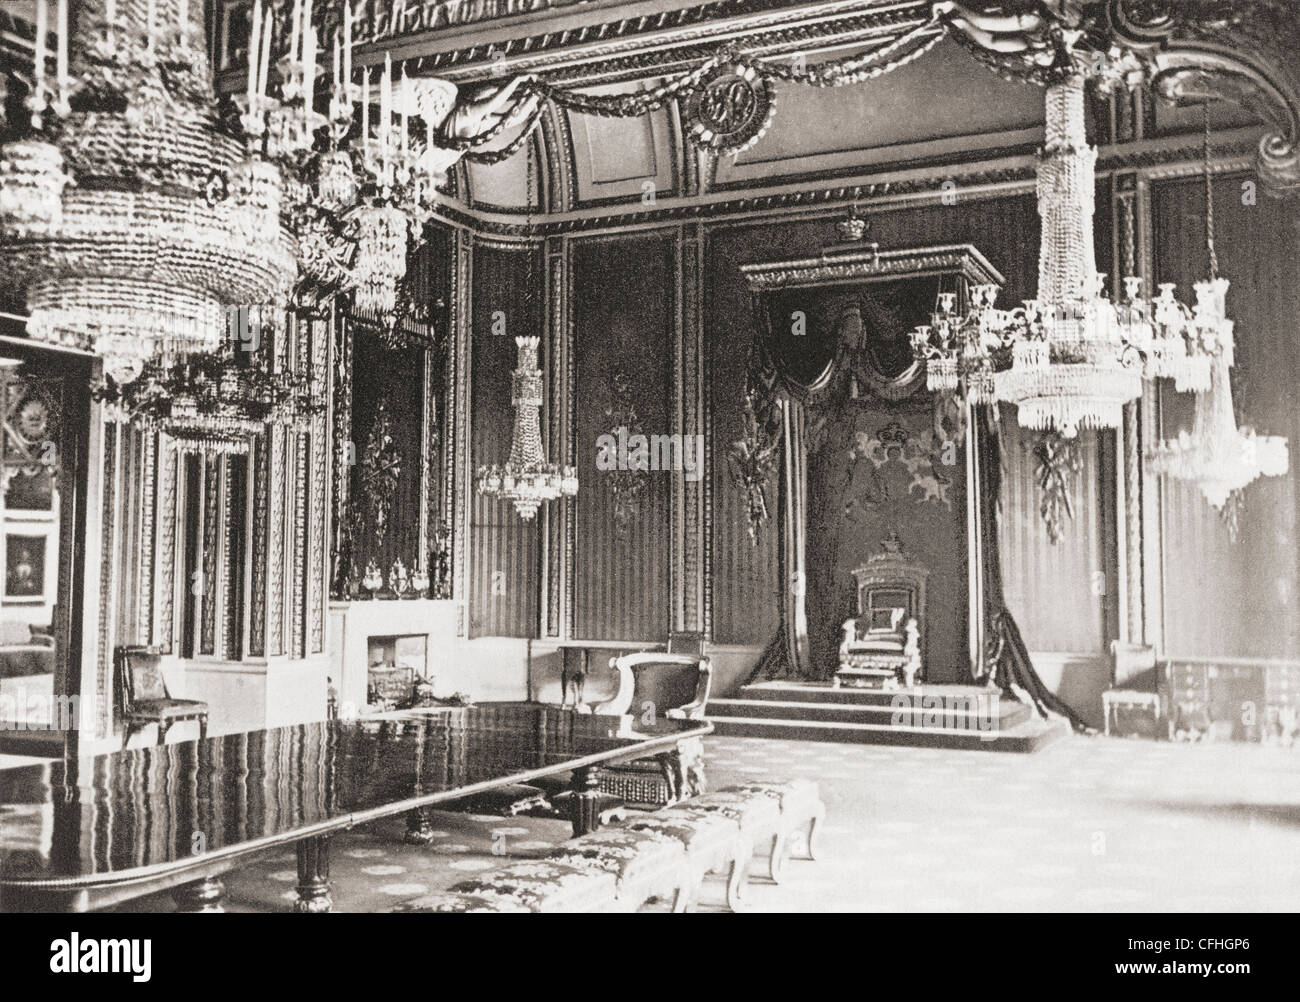 La Sala del Trono, Buckingham Palace di Londra, in Inghilterra alla fine del XIX secolo. Da Londra, storico e sociale, pubblicato 1902. Foto Stock